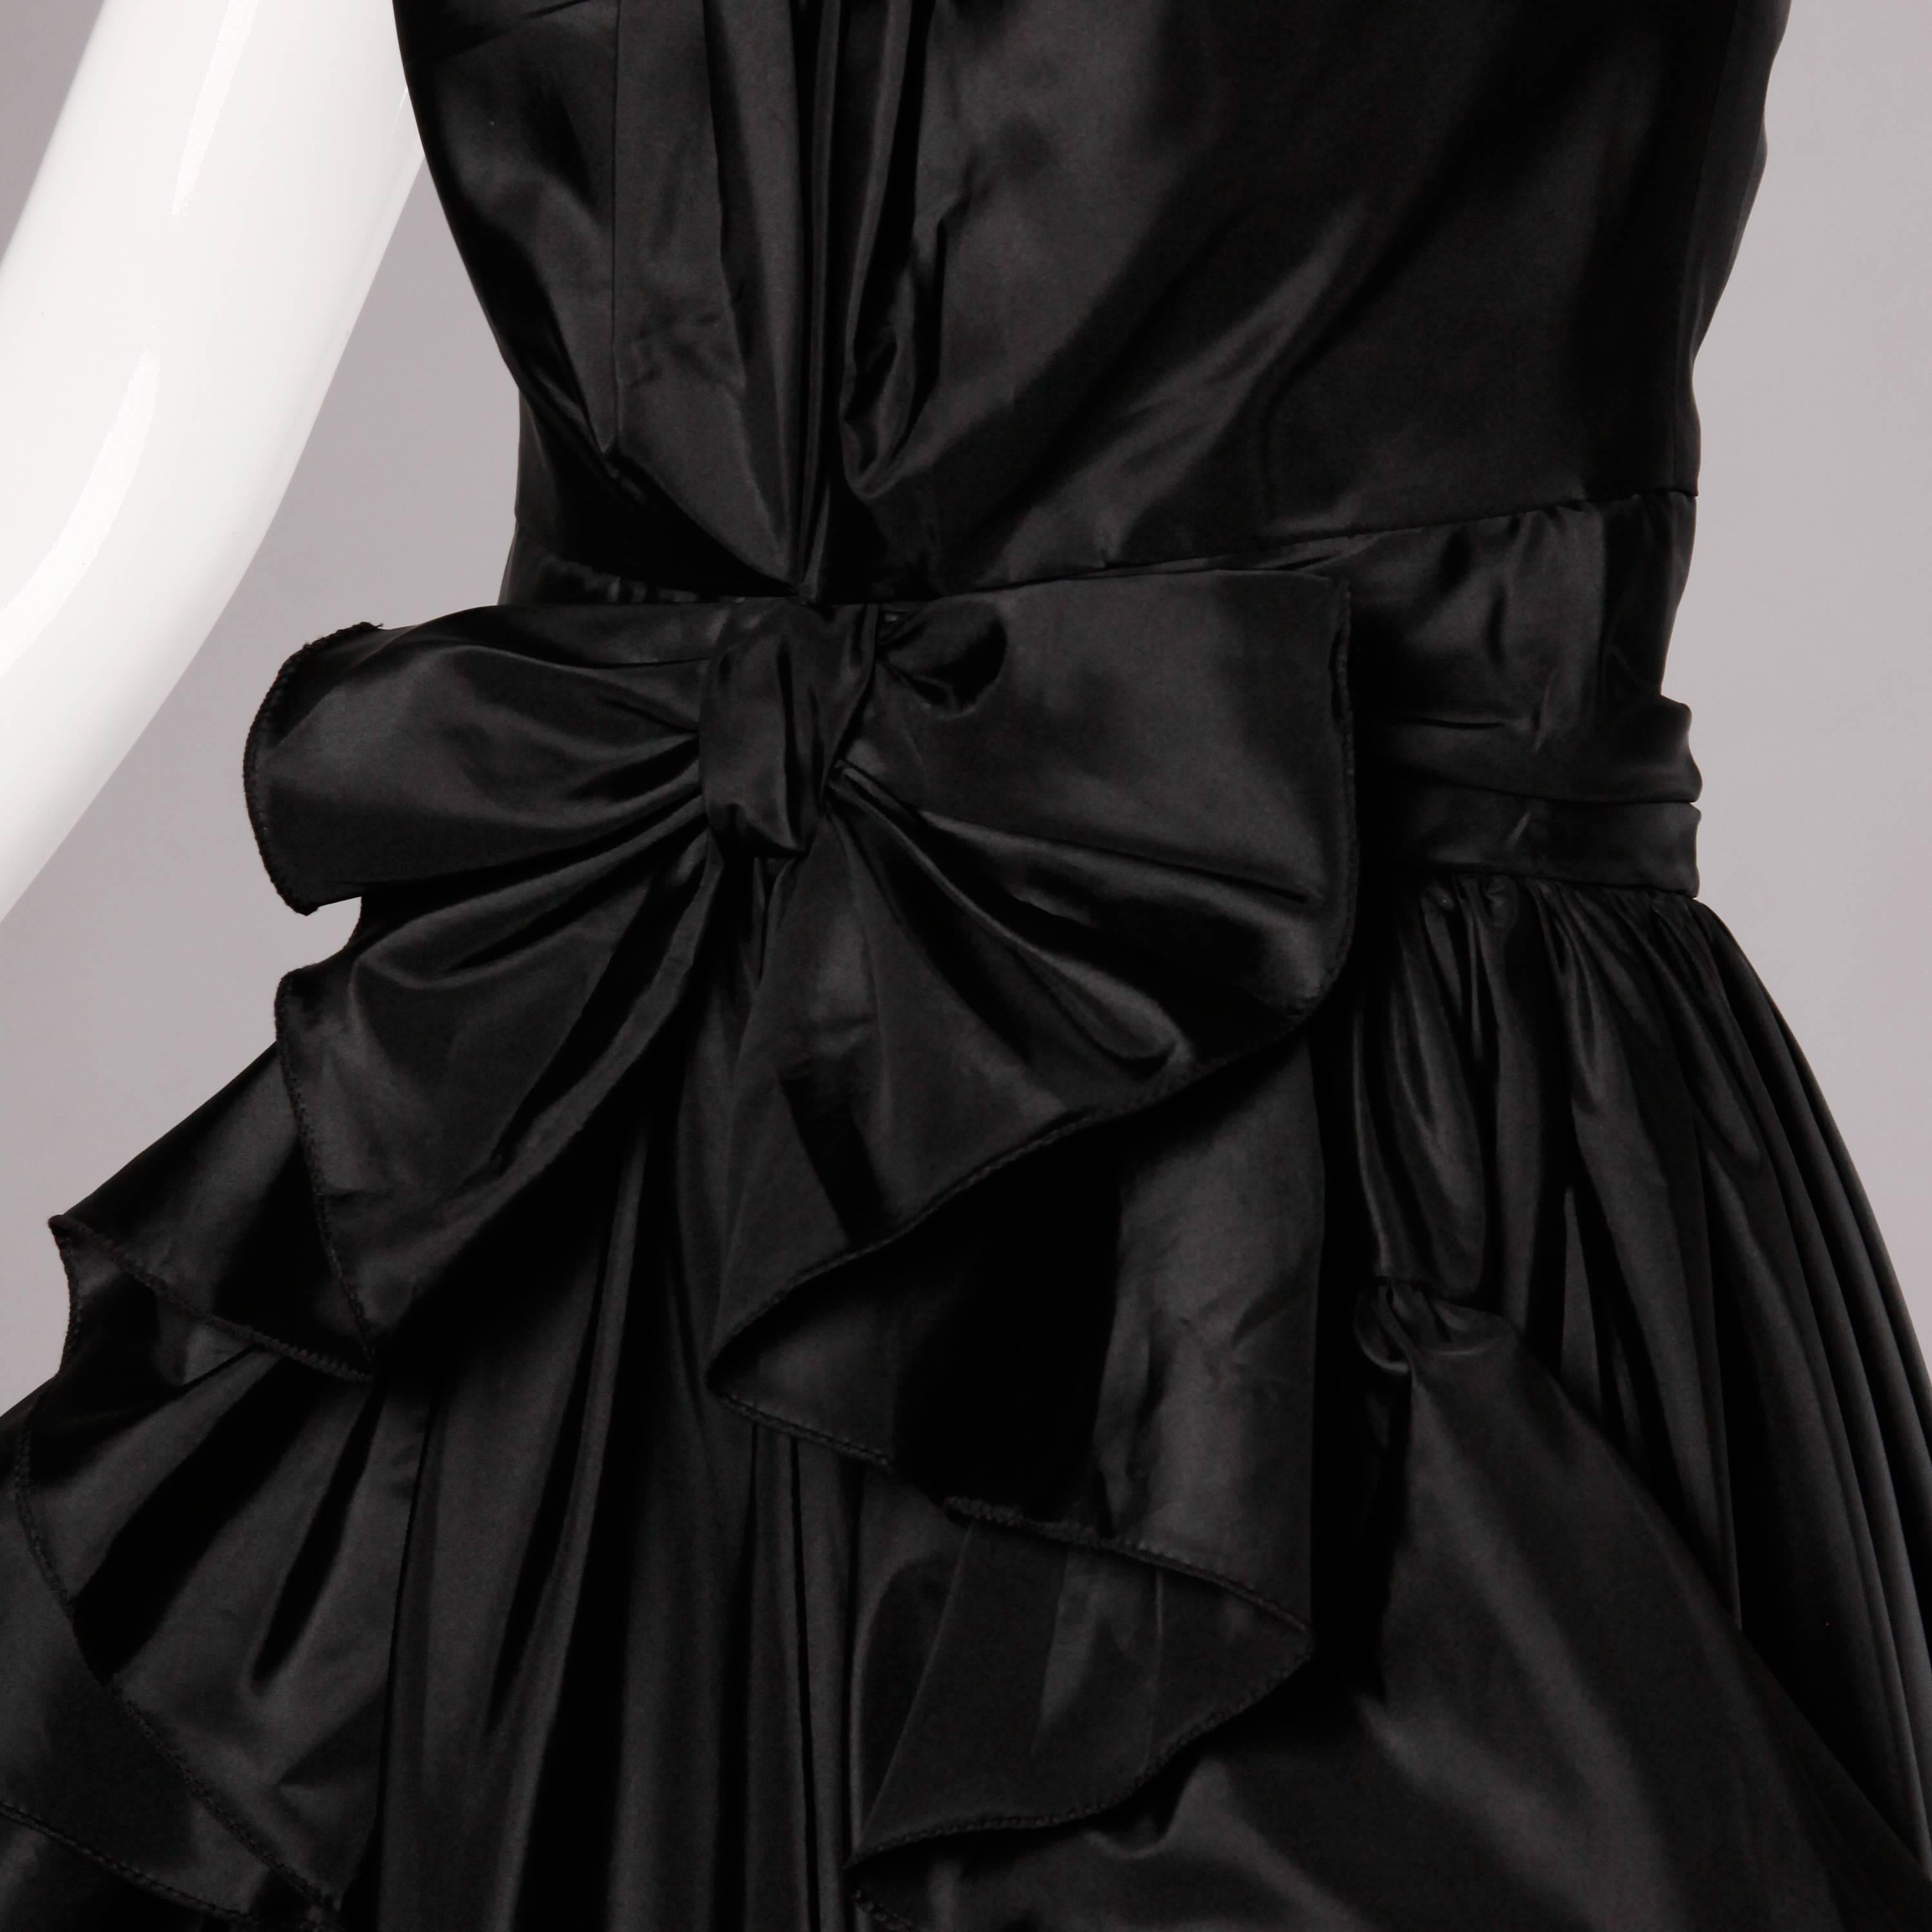 Début des années 1980 inspiré par les années 1950 ! Cette robe de soirée Jean Varon présente des volants et un nœud sur le devant. Partiellement doublé avec fermeture éclair à l'arrière. Fabriqué en Angleterre. La taille indiquée est un UK 12, mais